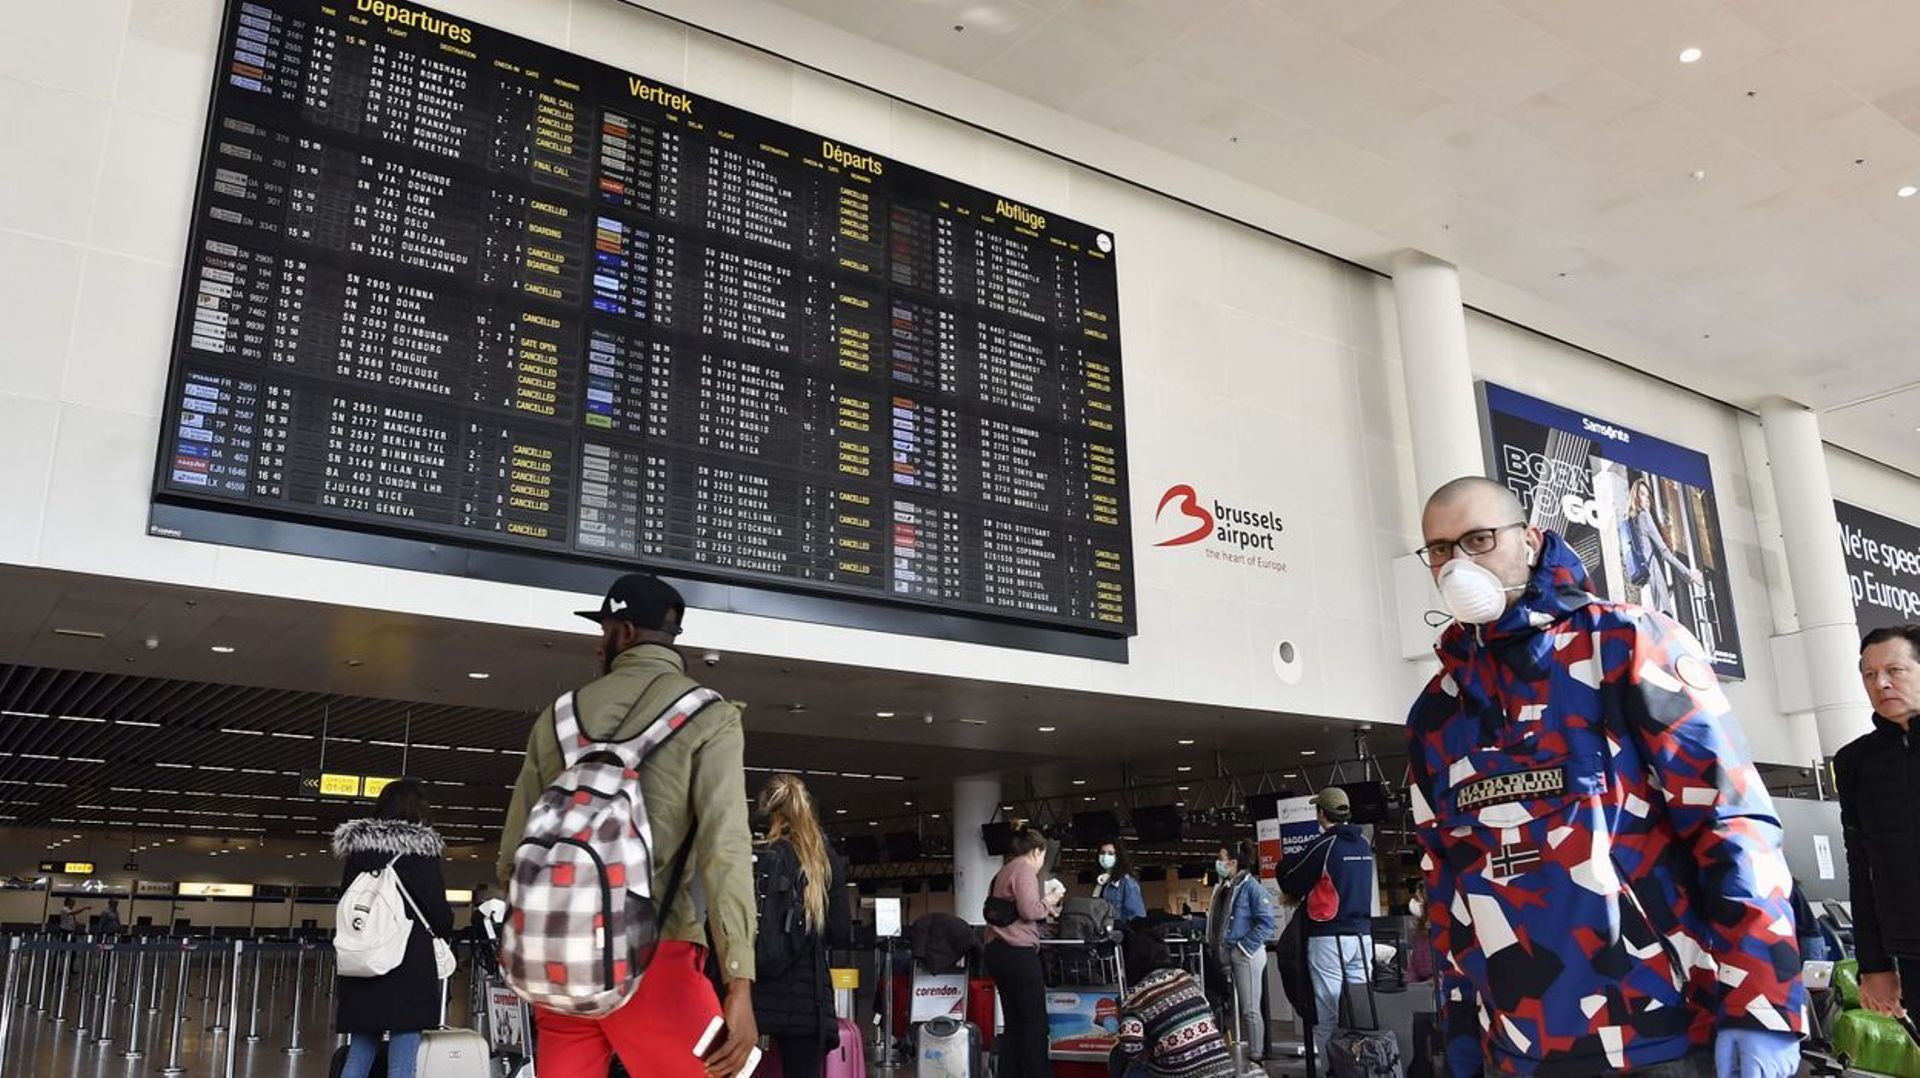 Brussels Aiport: le nombre de passagers a augmenté en juillet mais reste inférieur aux chiffres de 2019